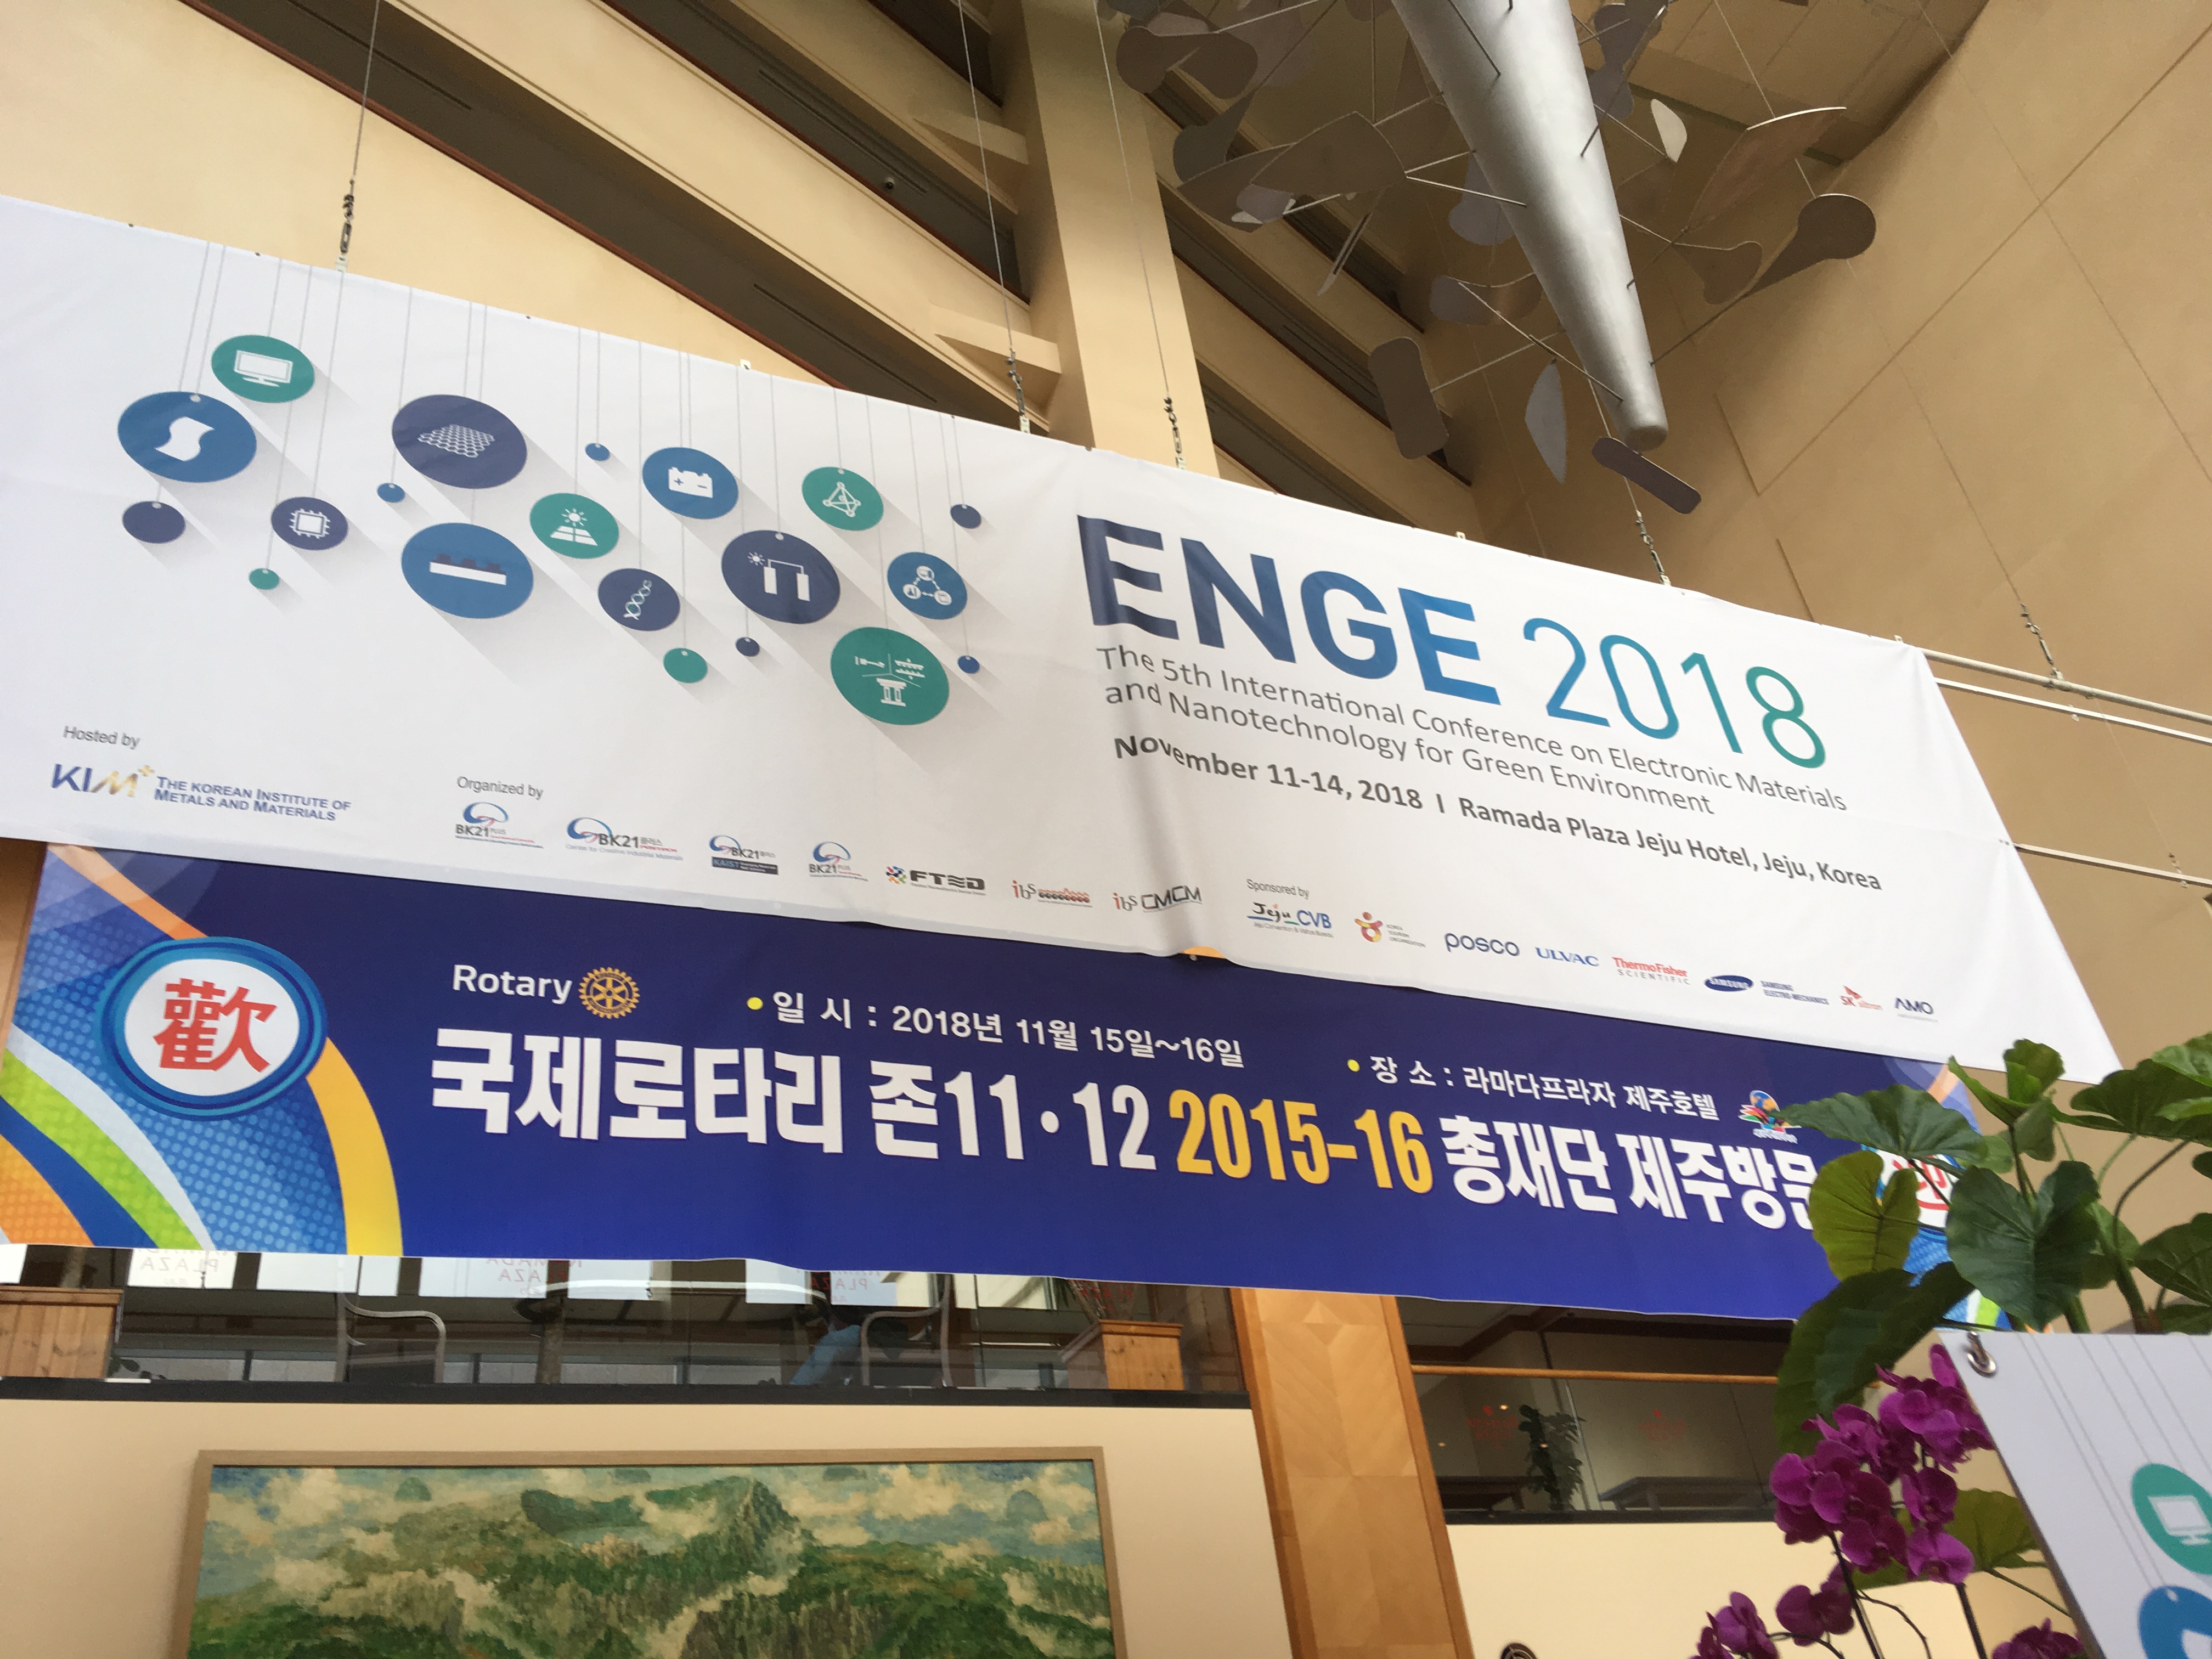 2018 International Conference on ENGE